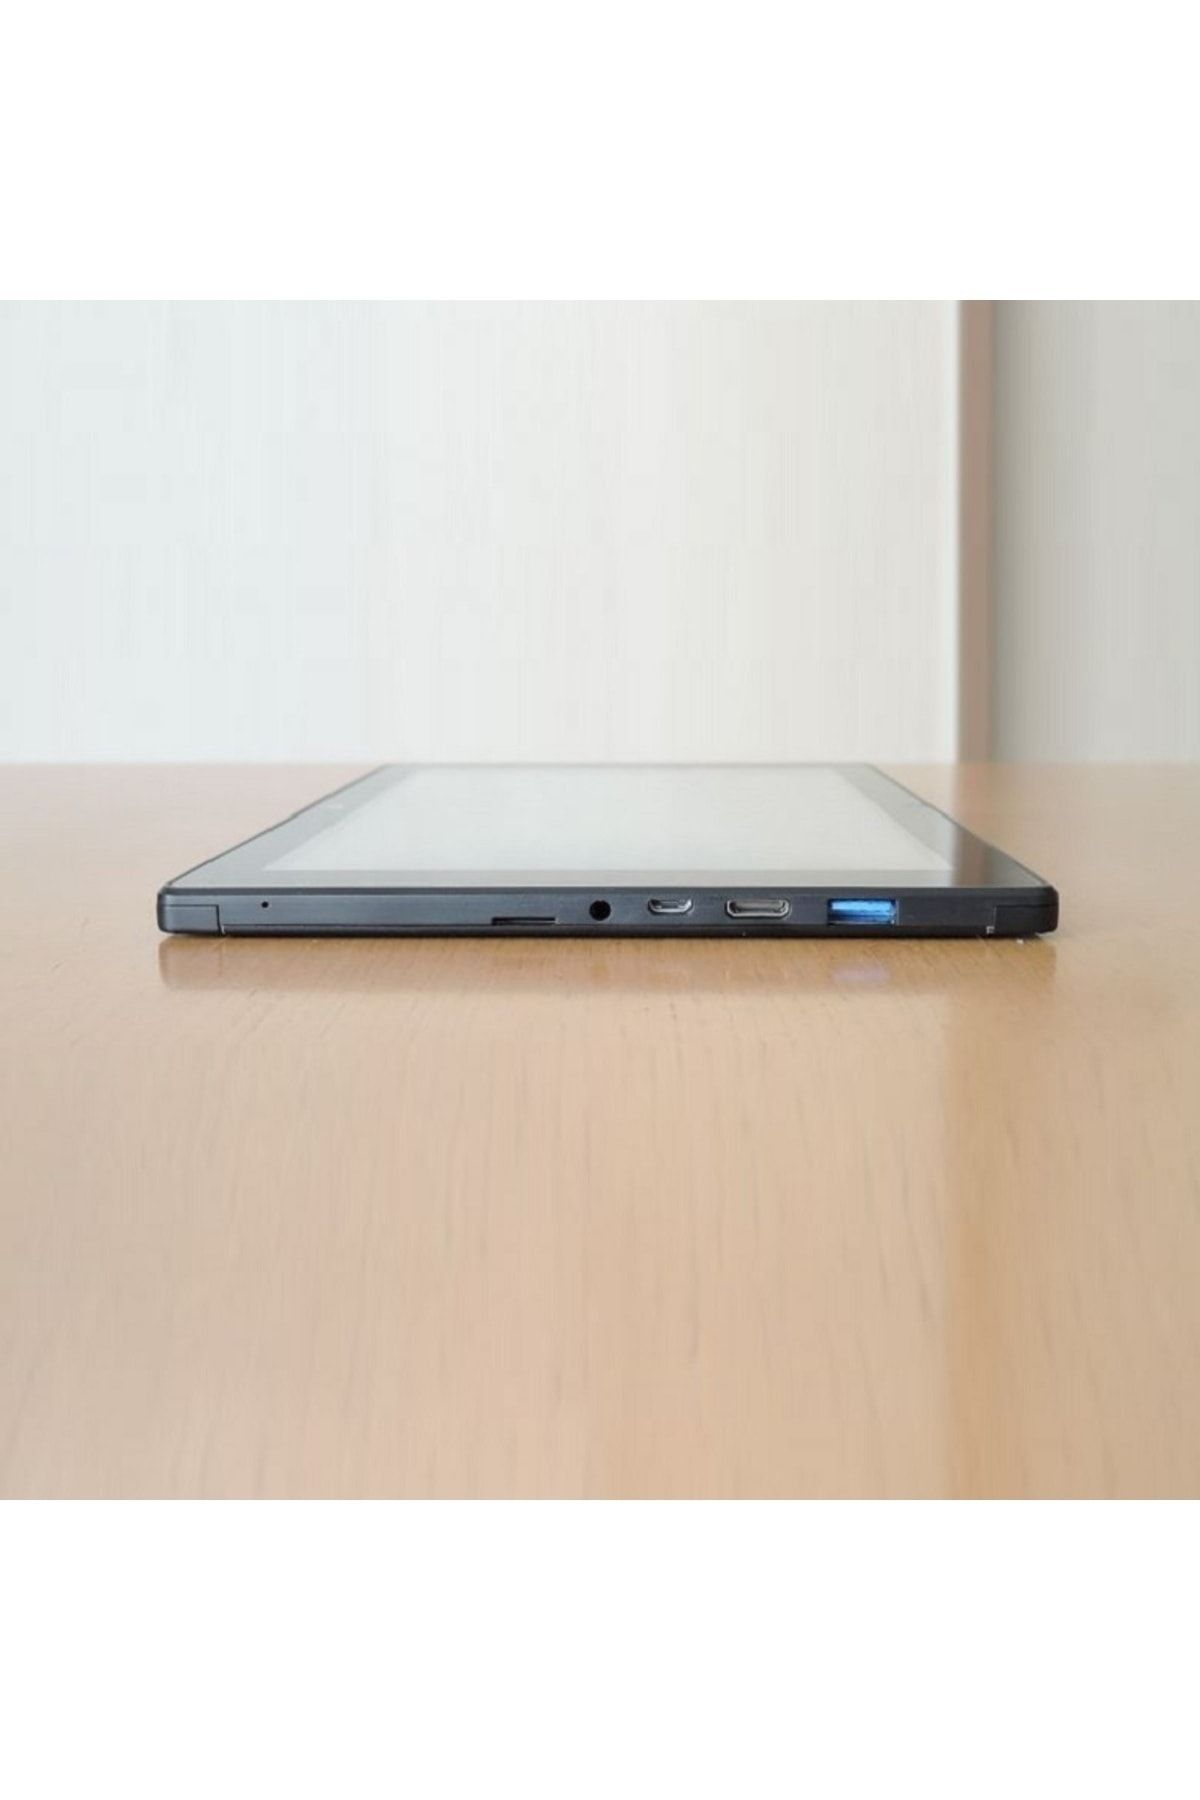 Diginnos Yenilenmiş Ürün- 10 Inc Usb Portlu Windows 10 Pro Tablet 2gb Ram + 32gb Rom